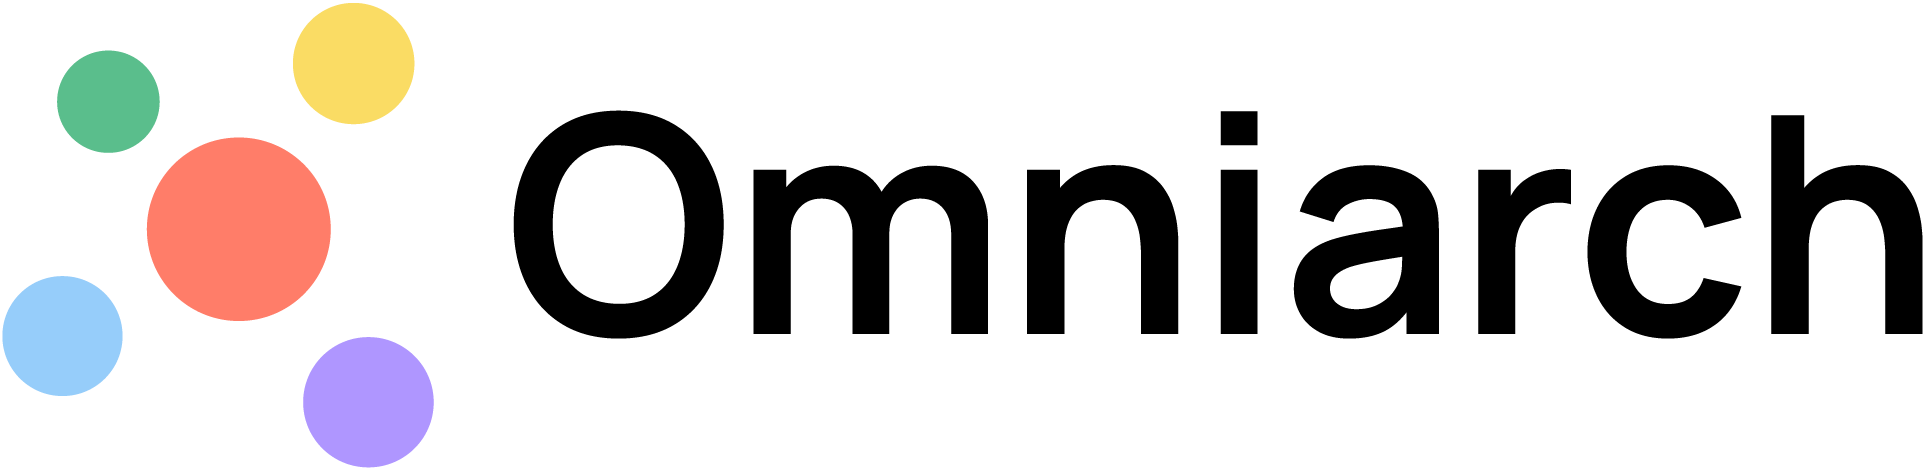 Omniarch AB logo